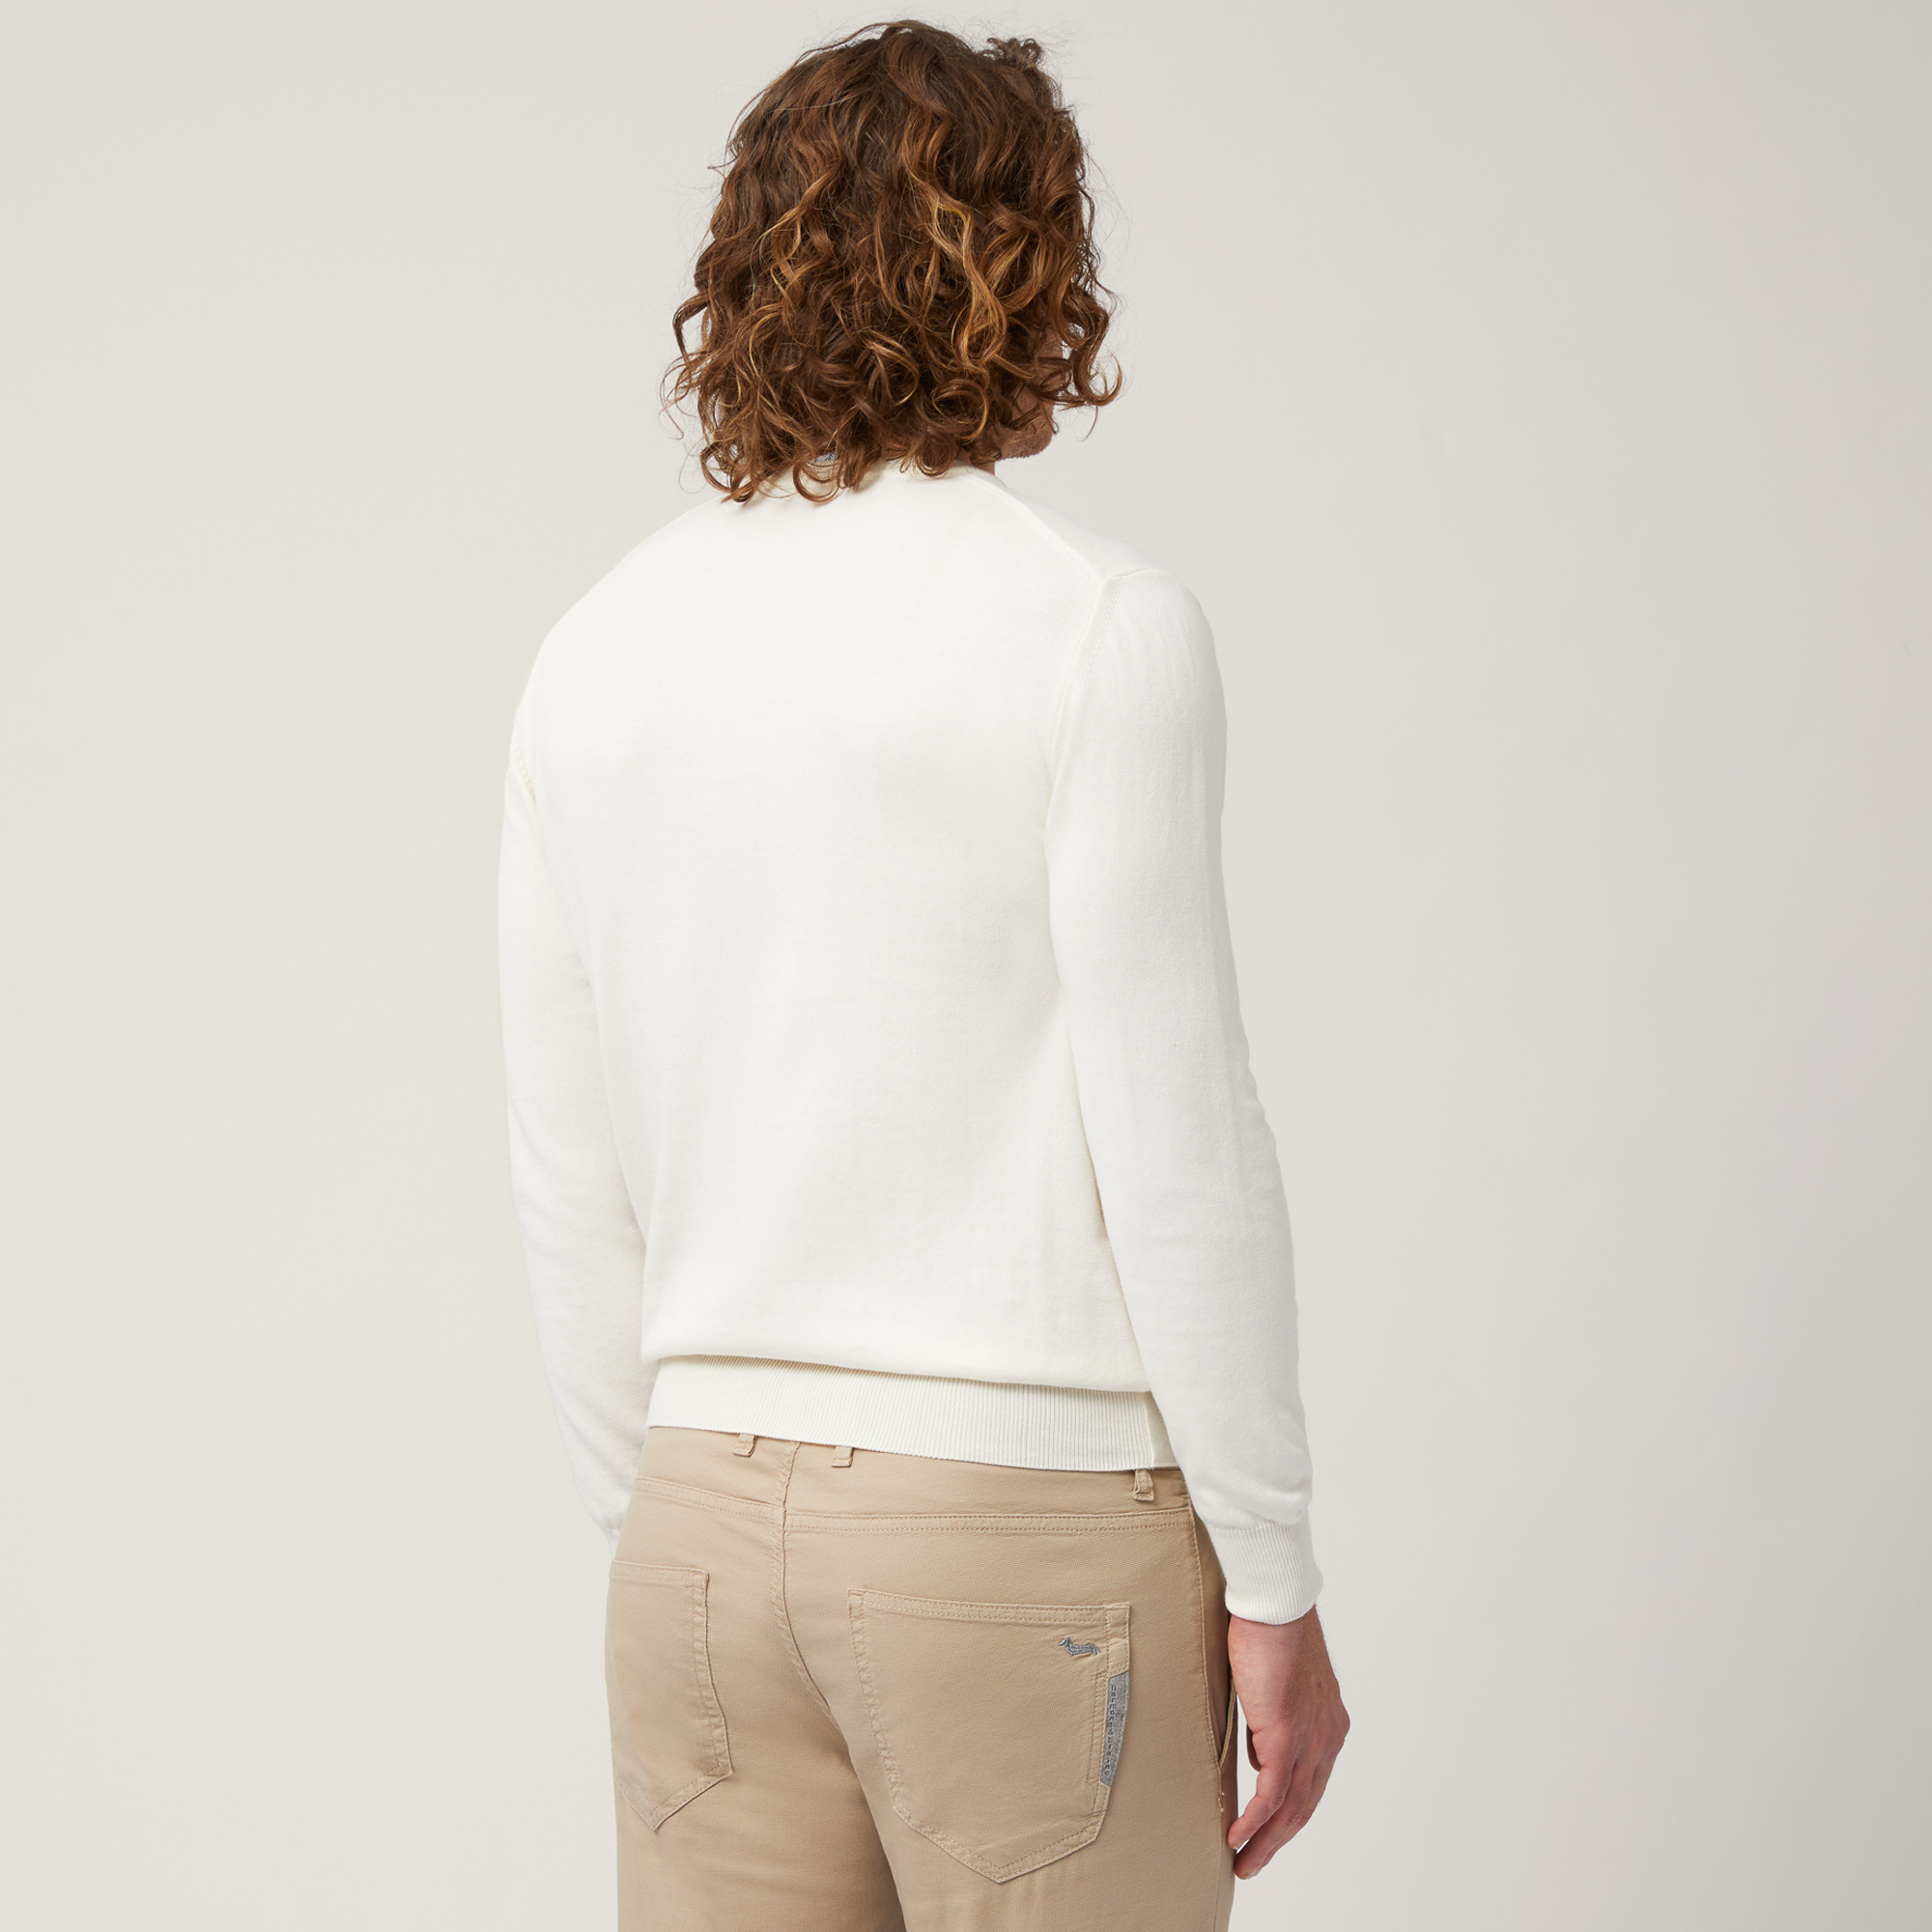 Pullover mit Rundhalsausschnitt aus Baumwolle, Weiß, large image number 1